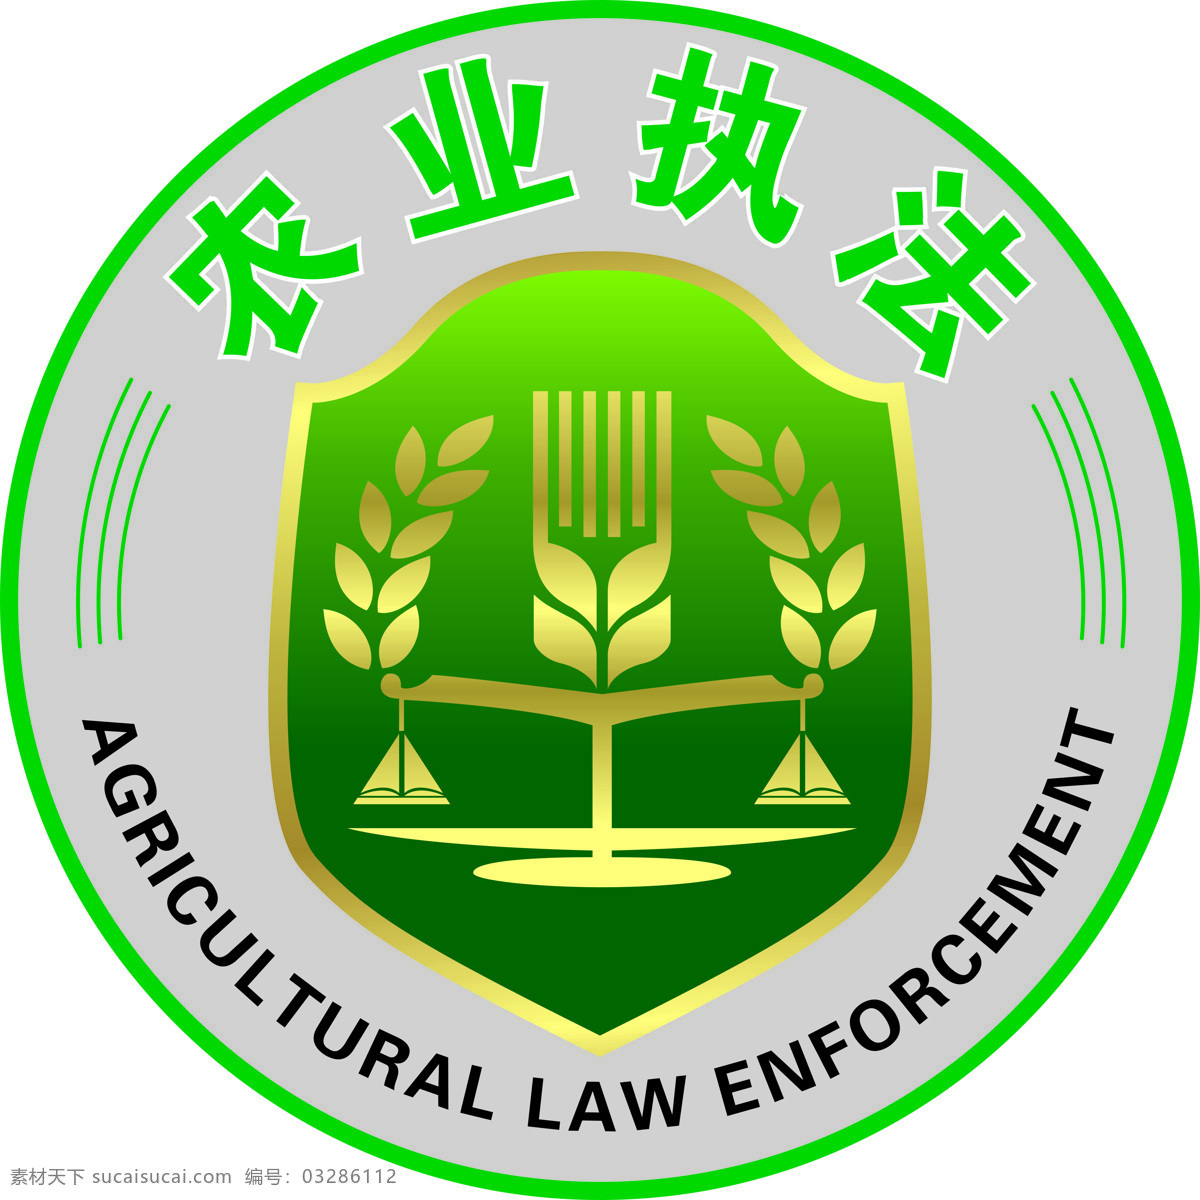 农业执法标志 农业 执法 绿字 标志 英文 logo设计